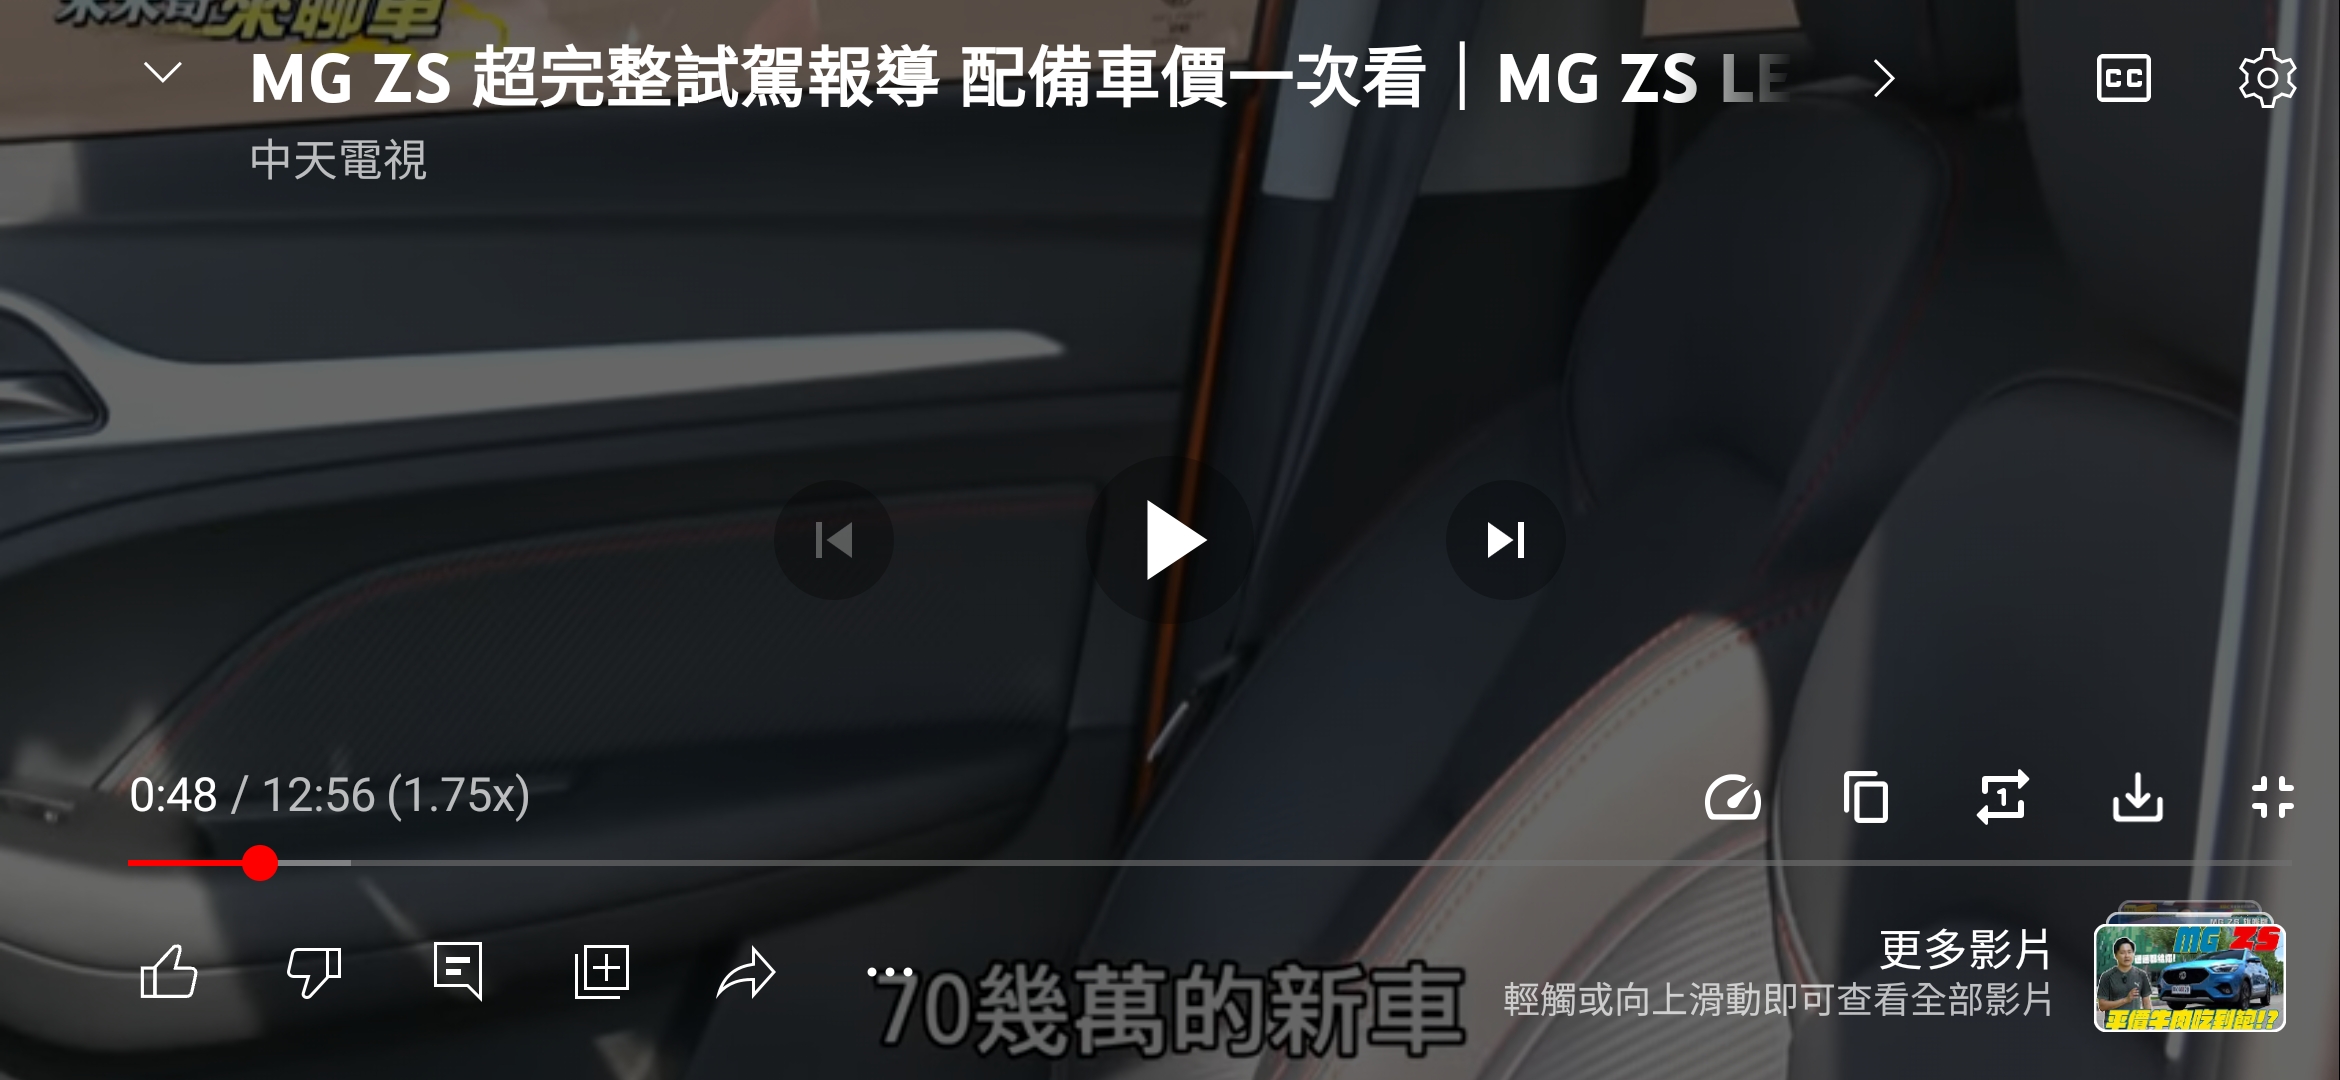 Re: [分享] MG ZS- 8891開箱評測